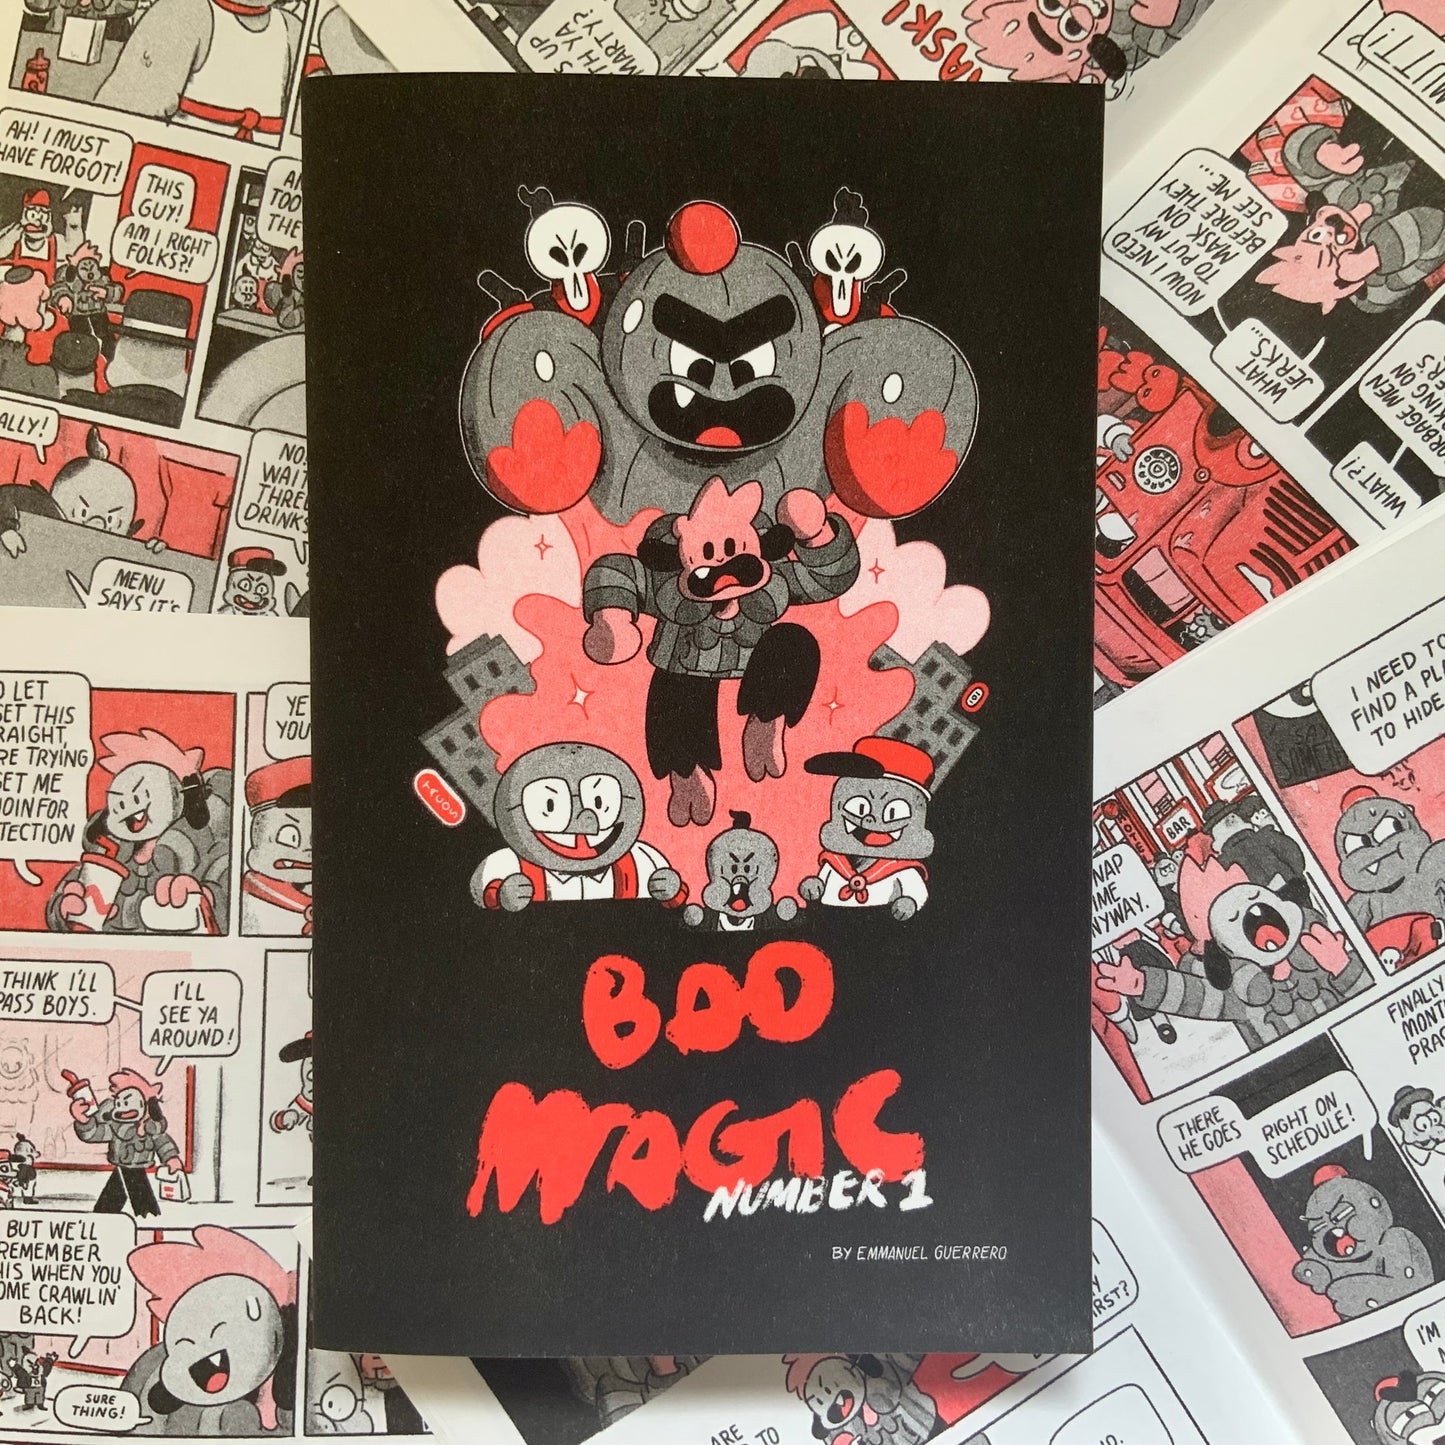 Bad Magic #1 by Emmanuel Guerrero